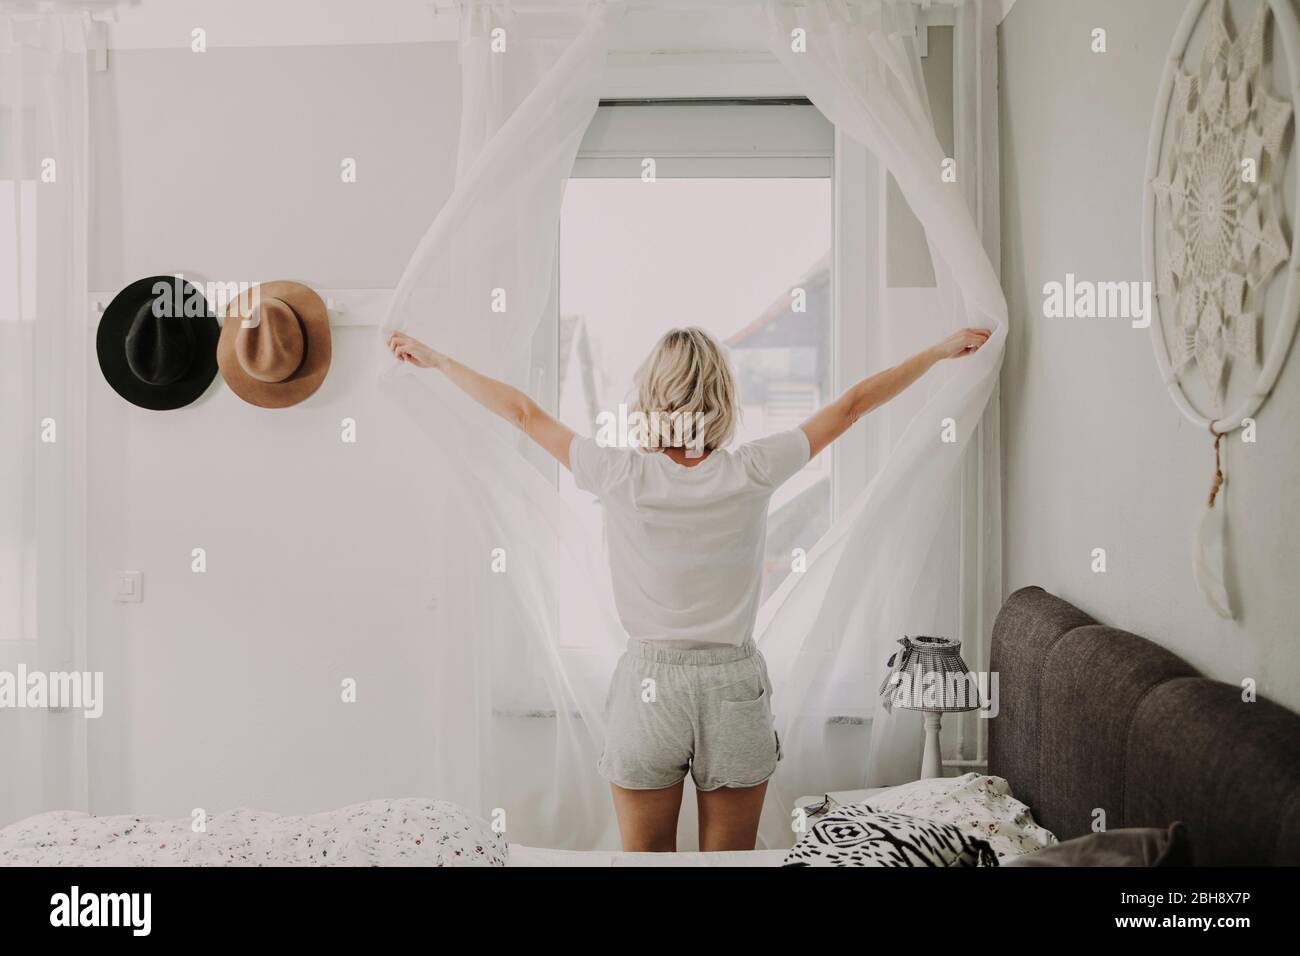 Frau steht am Schlafzimmerfenster und öffnet die Gardinen Foto stock - Alamy